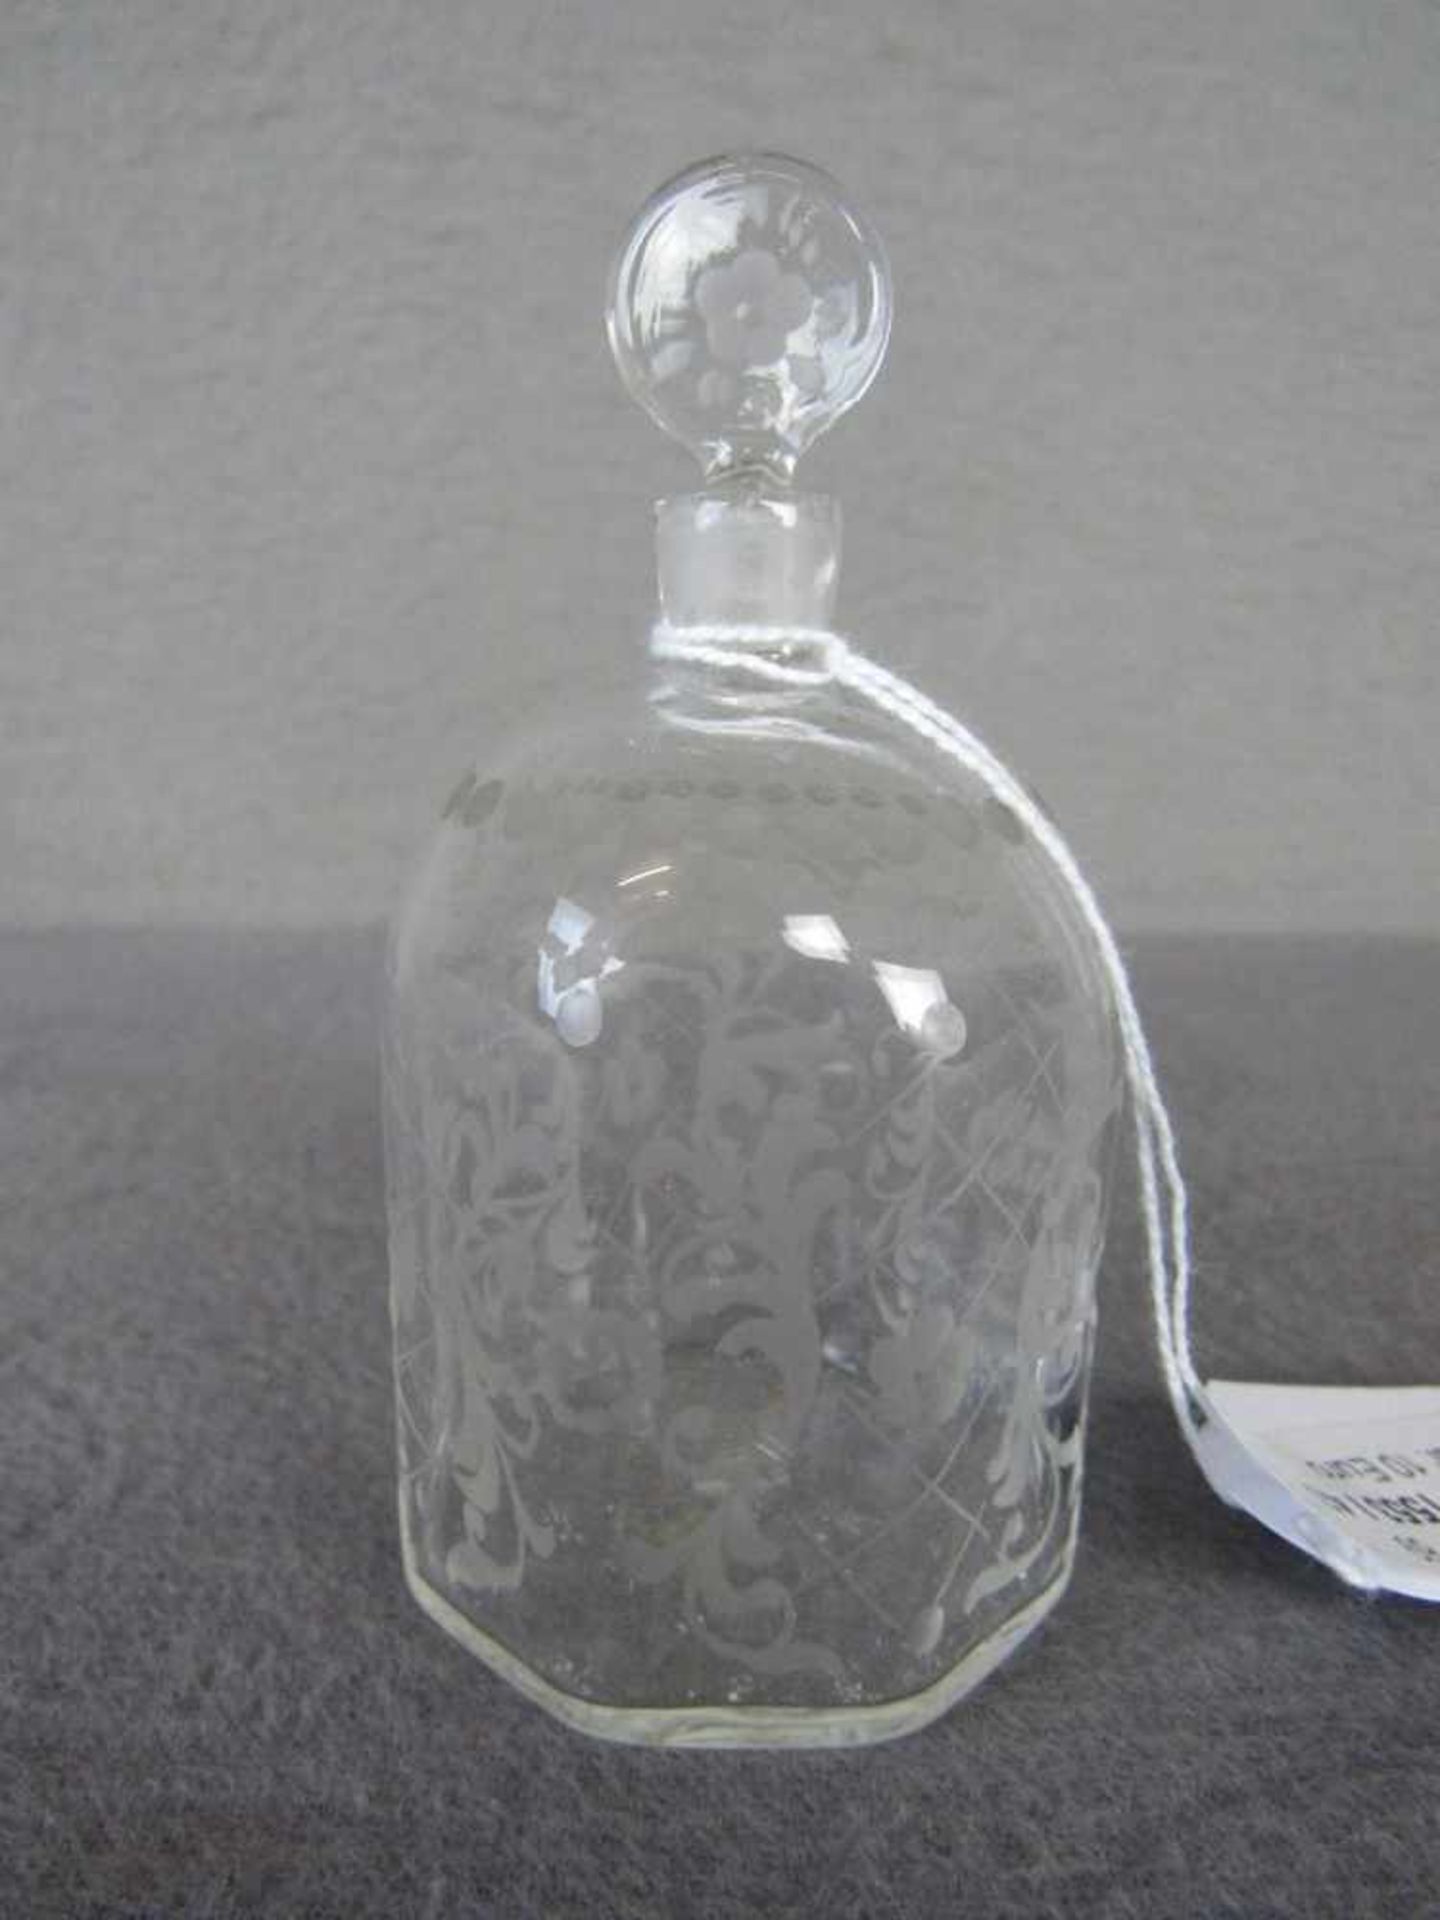 Kleiner antiker Parfumflakon mit Ätzung ca.10cm hoch- - -20.00 % buyer's premium on the hammer